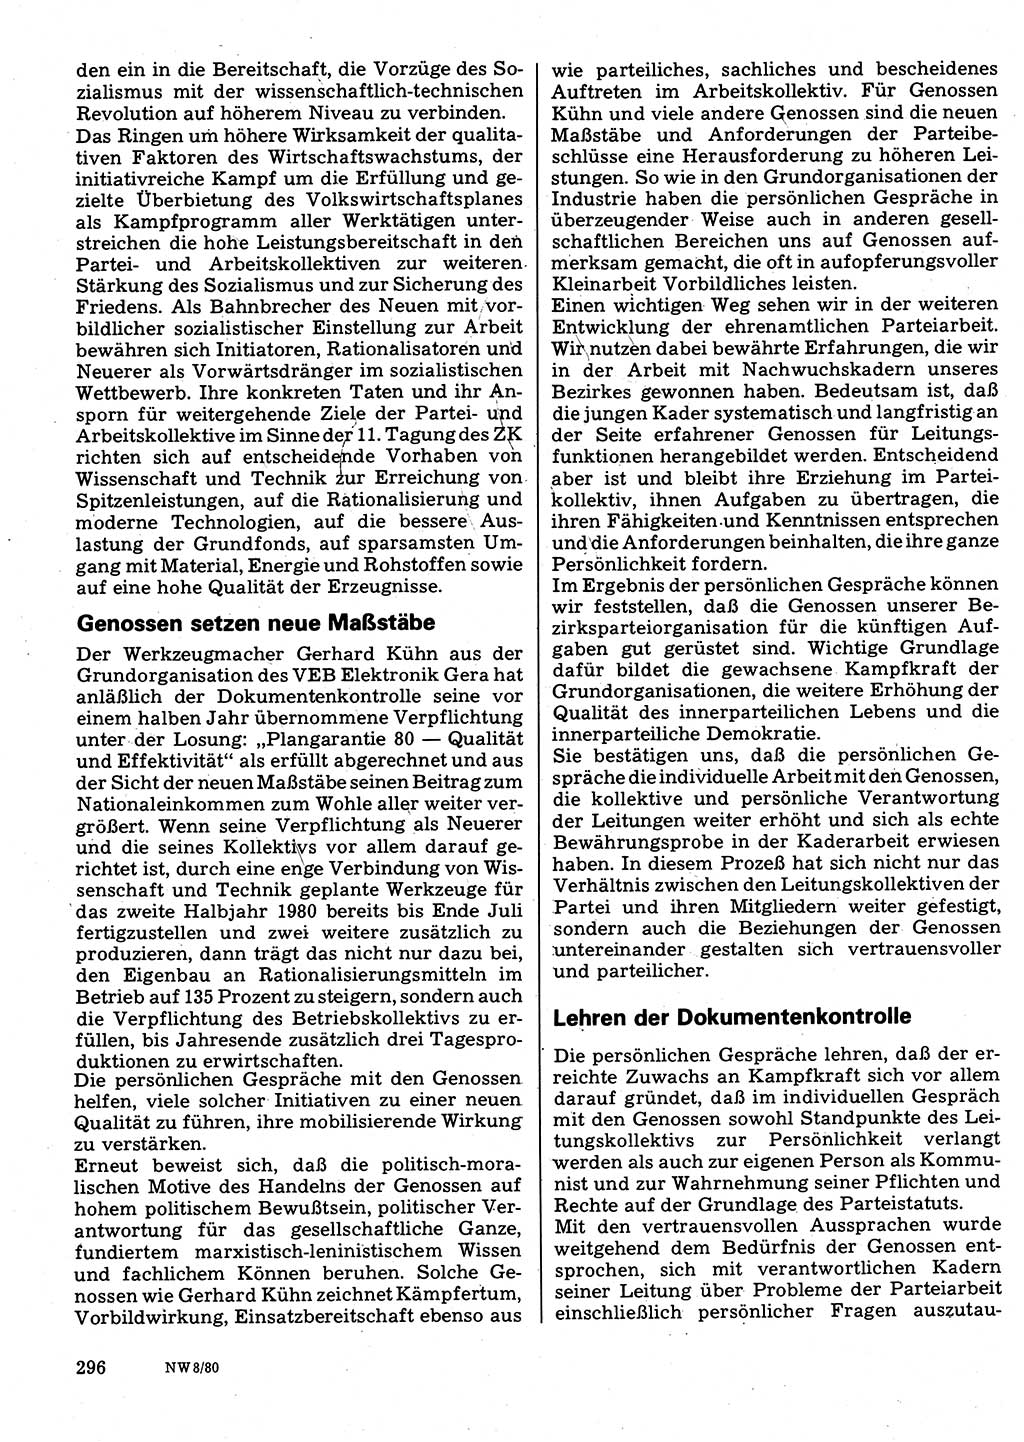 Neuer Weg (NW), Organ des Zentralkomitees (ZK) der SED (Sozialistische Einheitspartei Deutschlands) für Fragen des Parteilebens, 35. Jahrgang [Deutsche Demokratische Republik (DDR)] 1980, Seite 296 (NW ZK SED DDR 1980, S. 296)